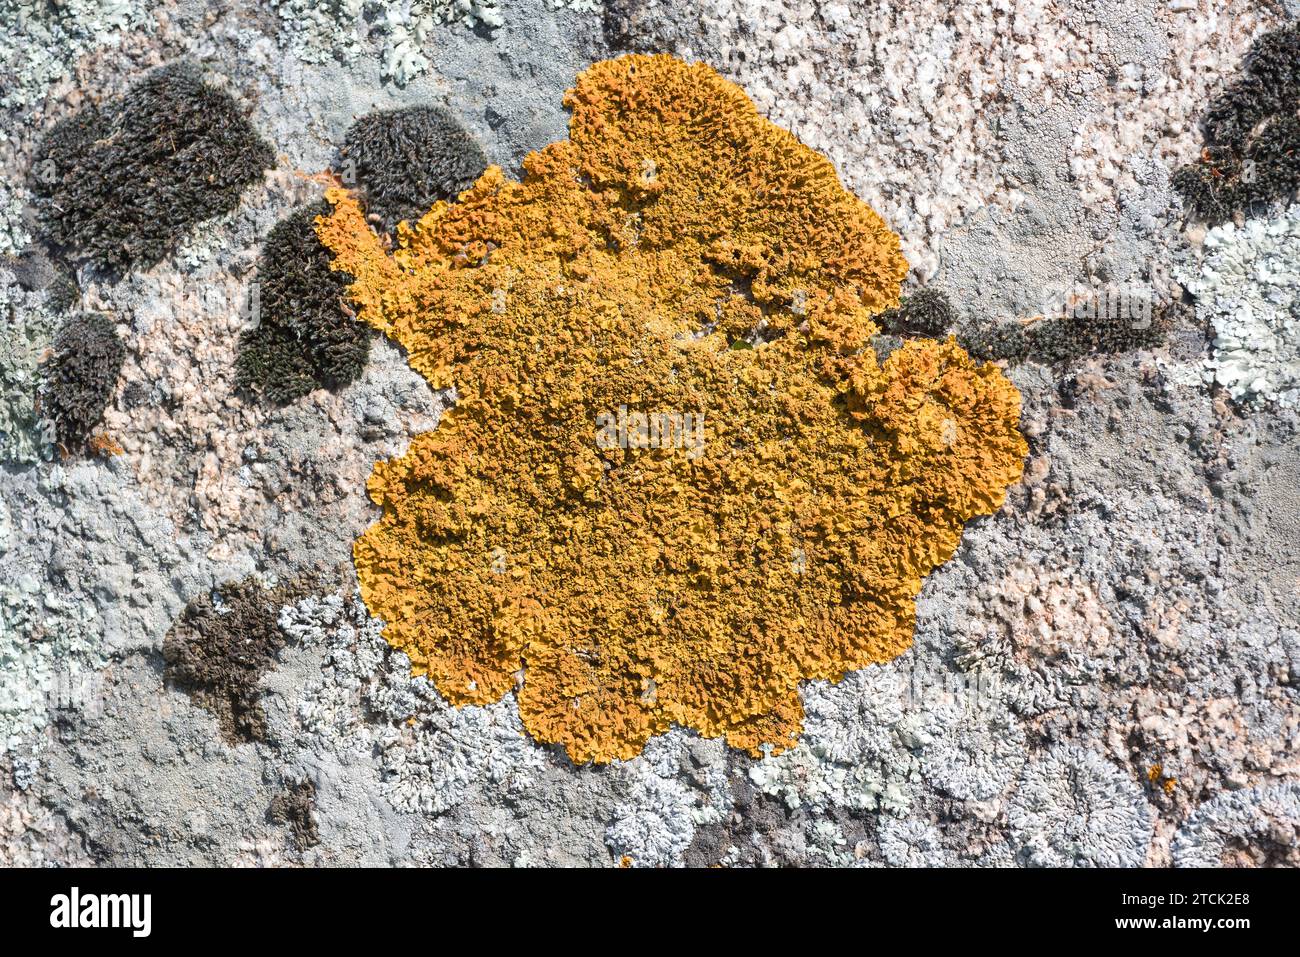 Xanthoria calcicola or Xanthoria aureola is an orange foliose lichen. This photo was taken in Vilaut, Girona province, Catalonia, Spain. Stock Photo